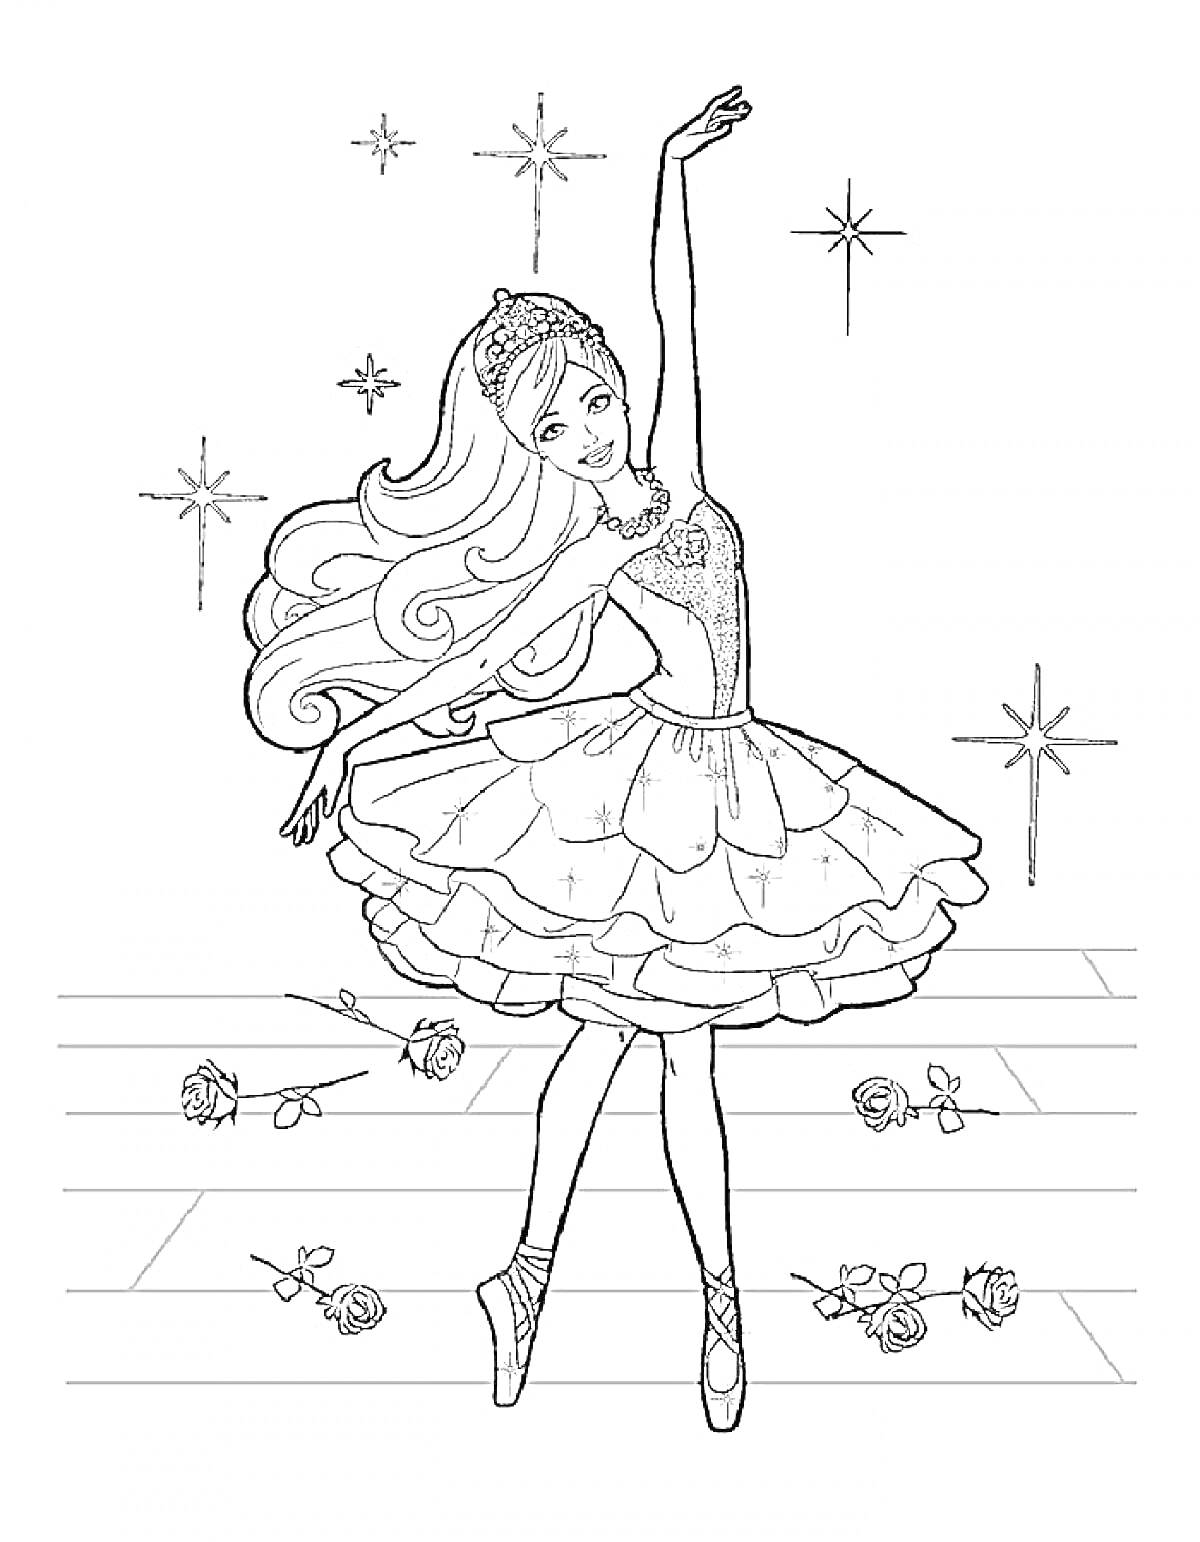 Танцовщица в балетной пачке на сцене с разбросанными розами и звездами на заднем плане